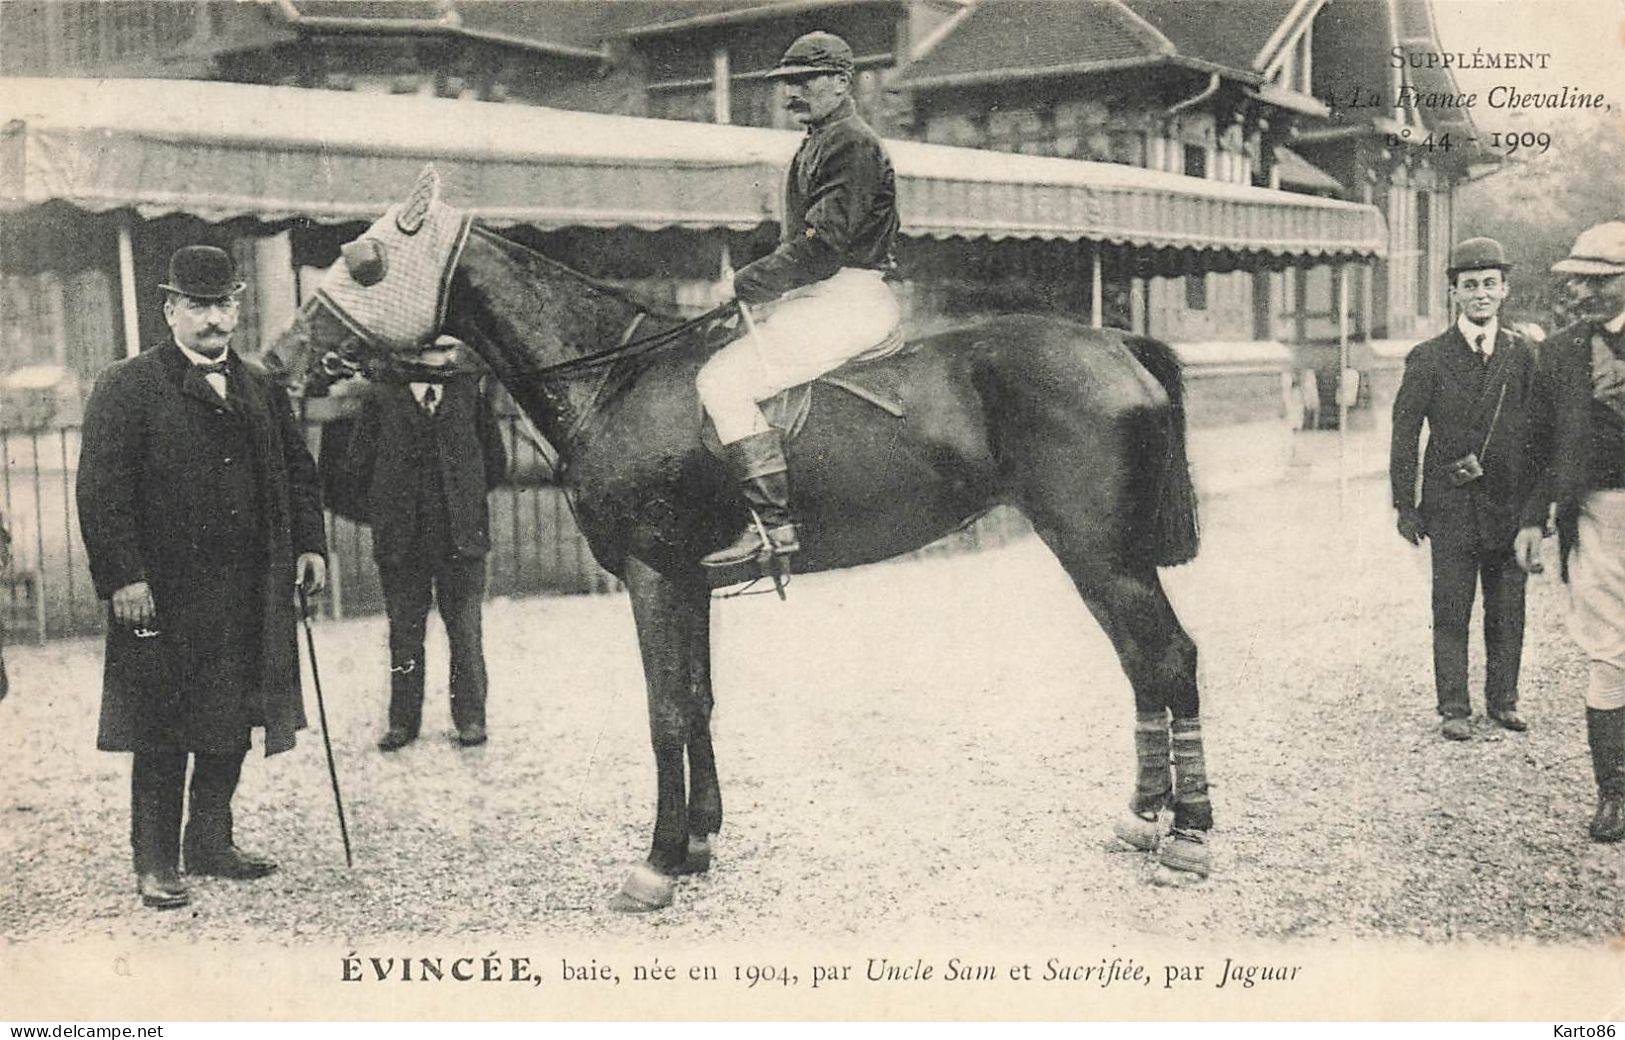 Hippisme * La France Chevaline N°44 1909 * Concours Centrale Hippique * Cheval EVINCEE Baie Jockey - Reitsport